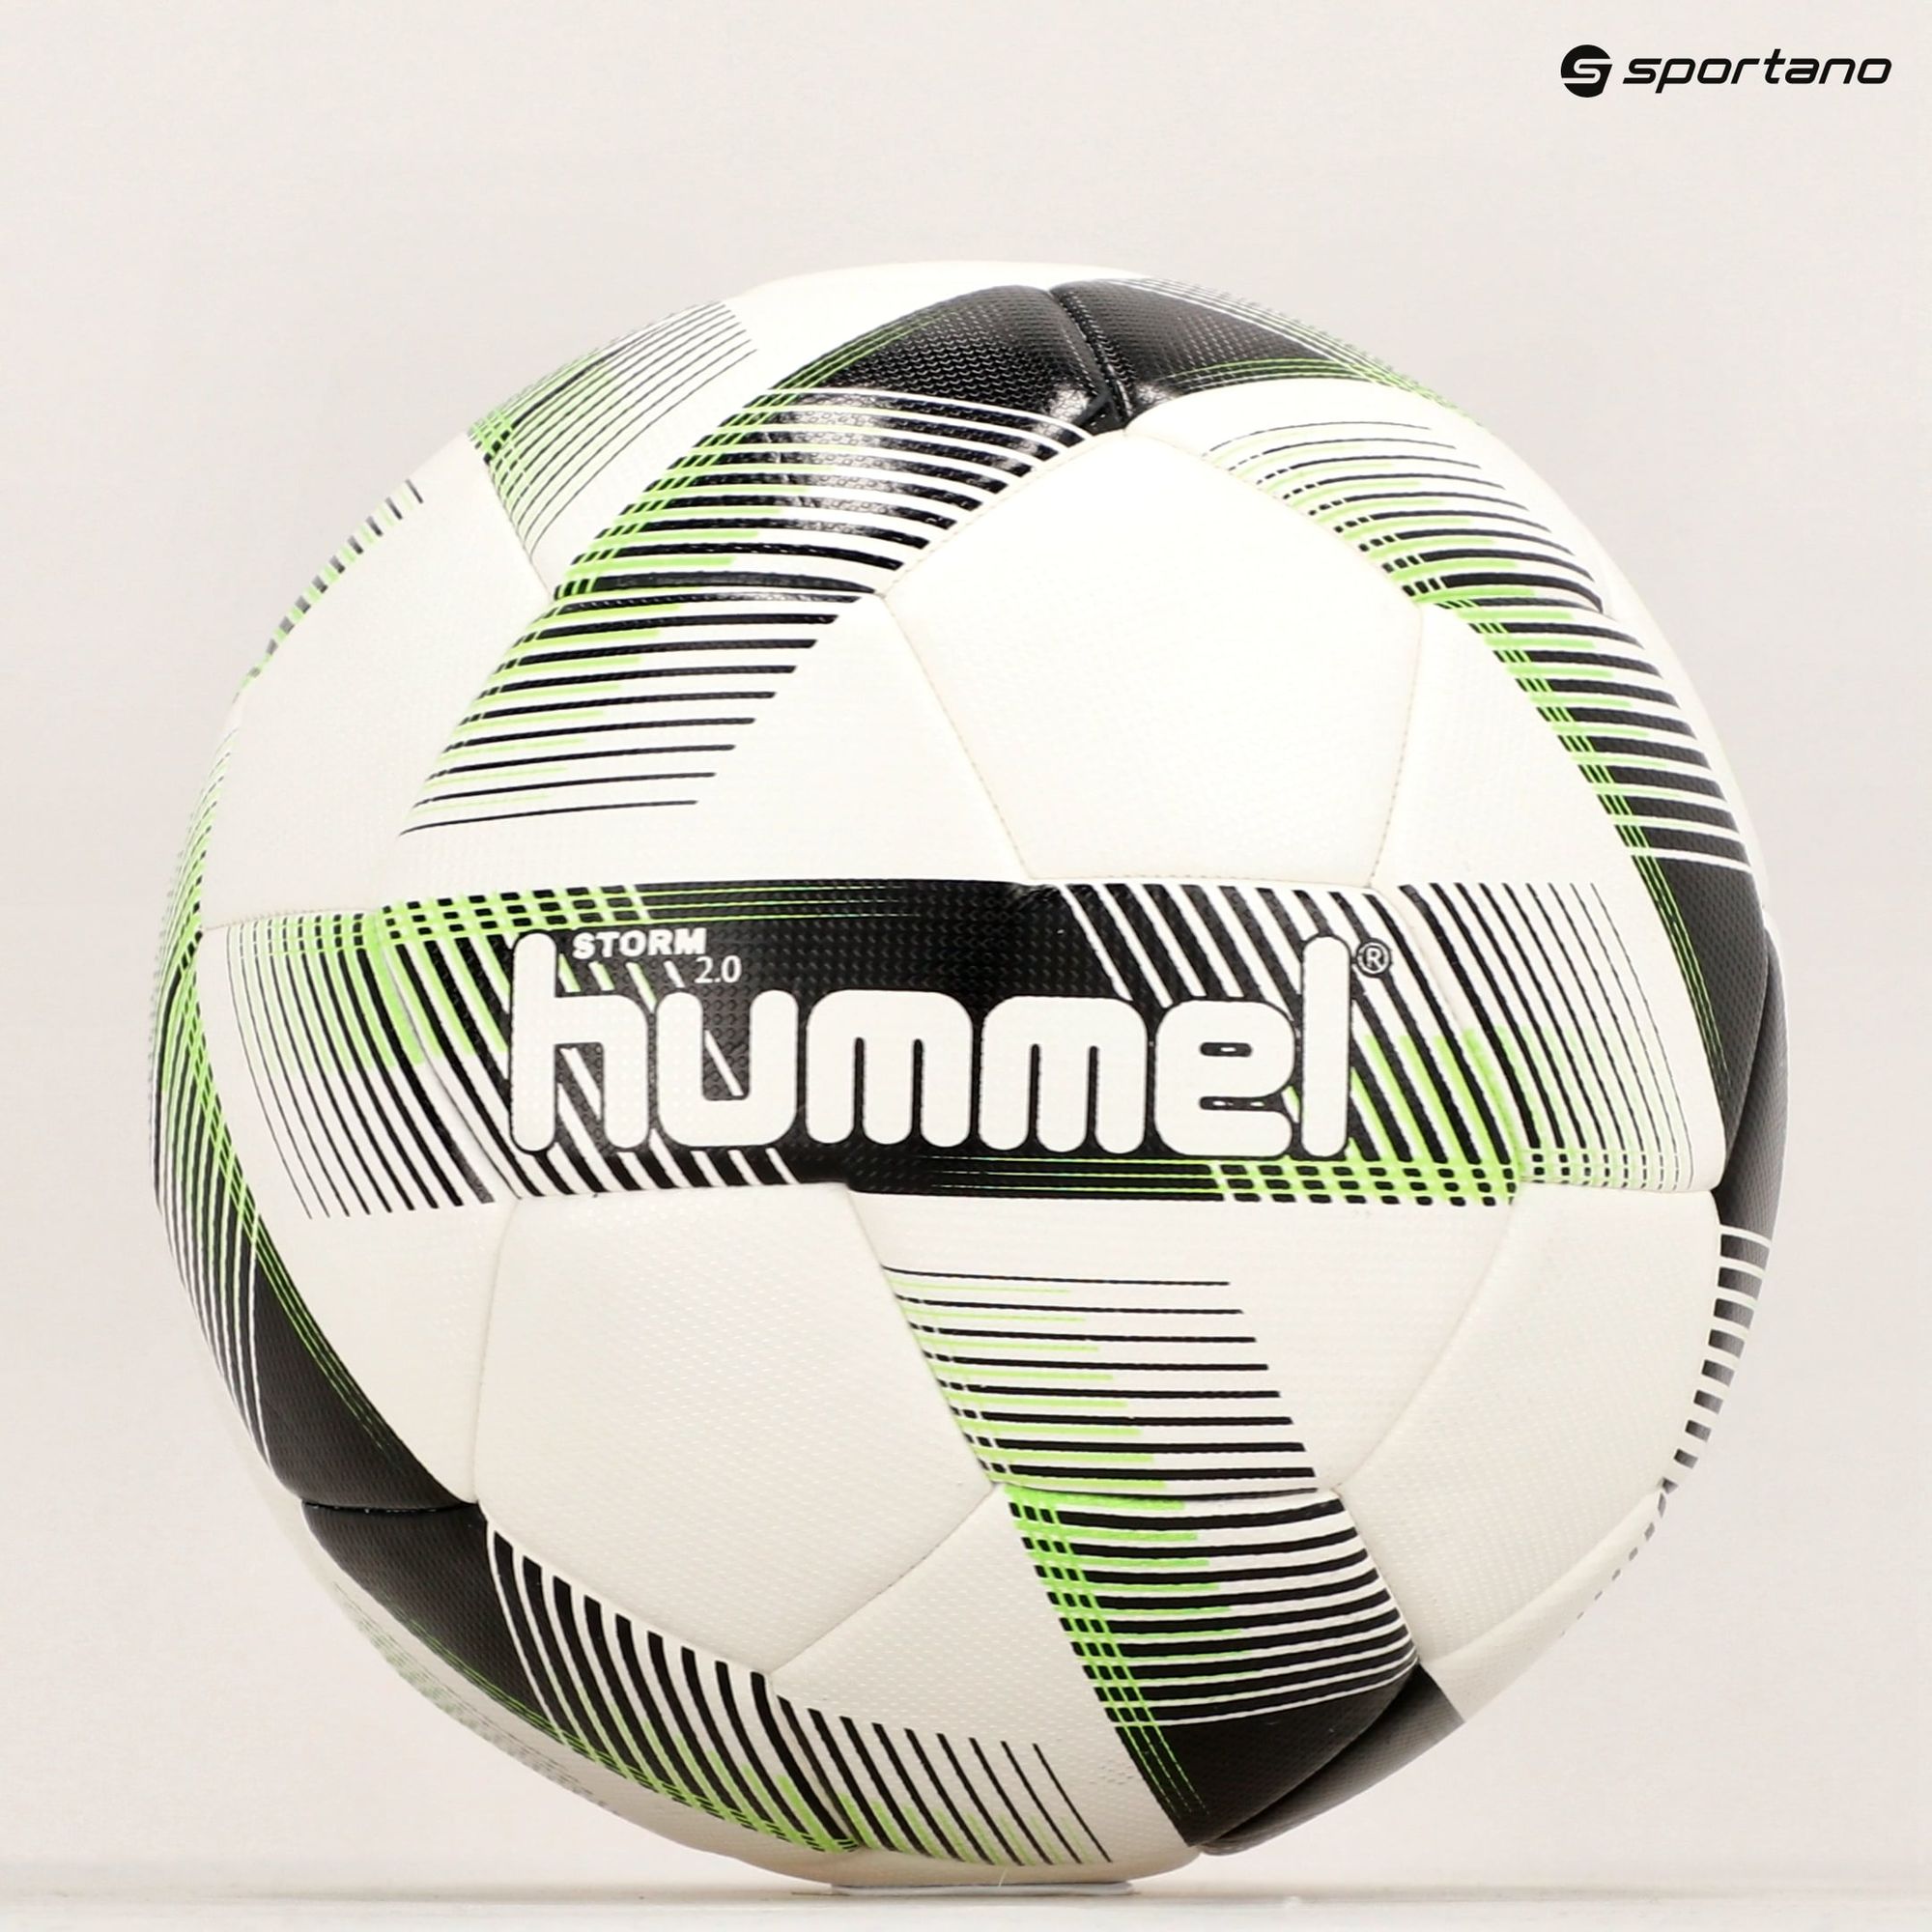 Piłka do piłki nożnej Hummel Storm 2.0 FB white/black/green rozmiar 5 zdjęcie nr 5